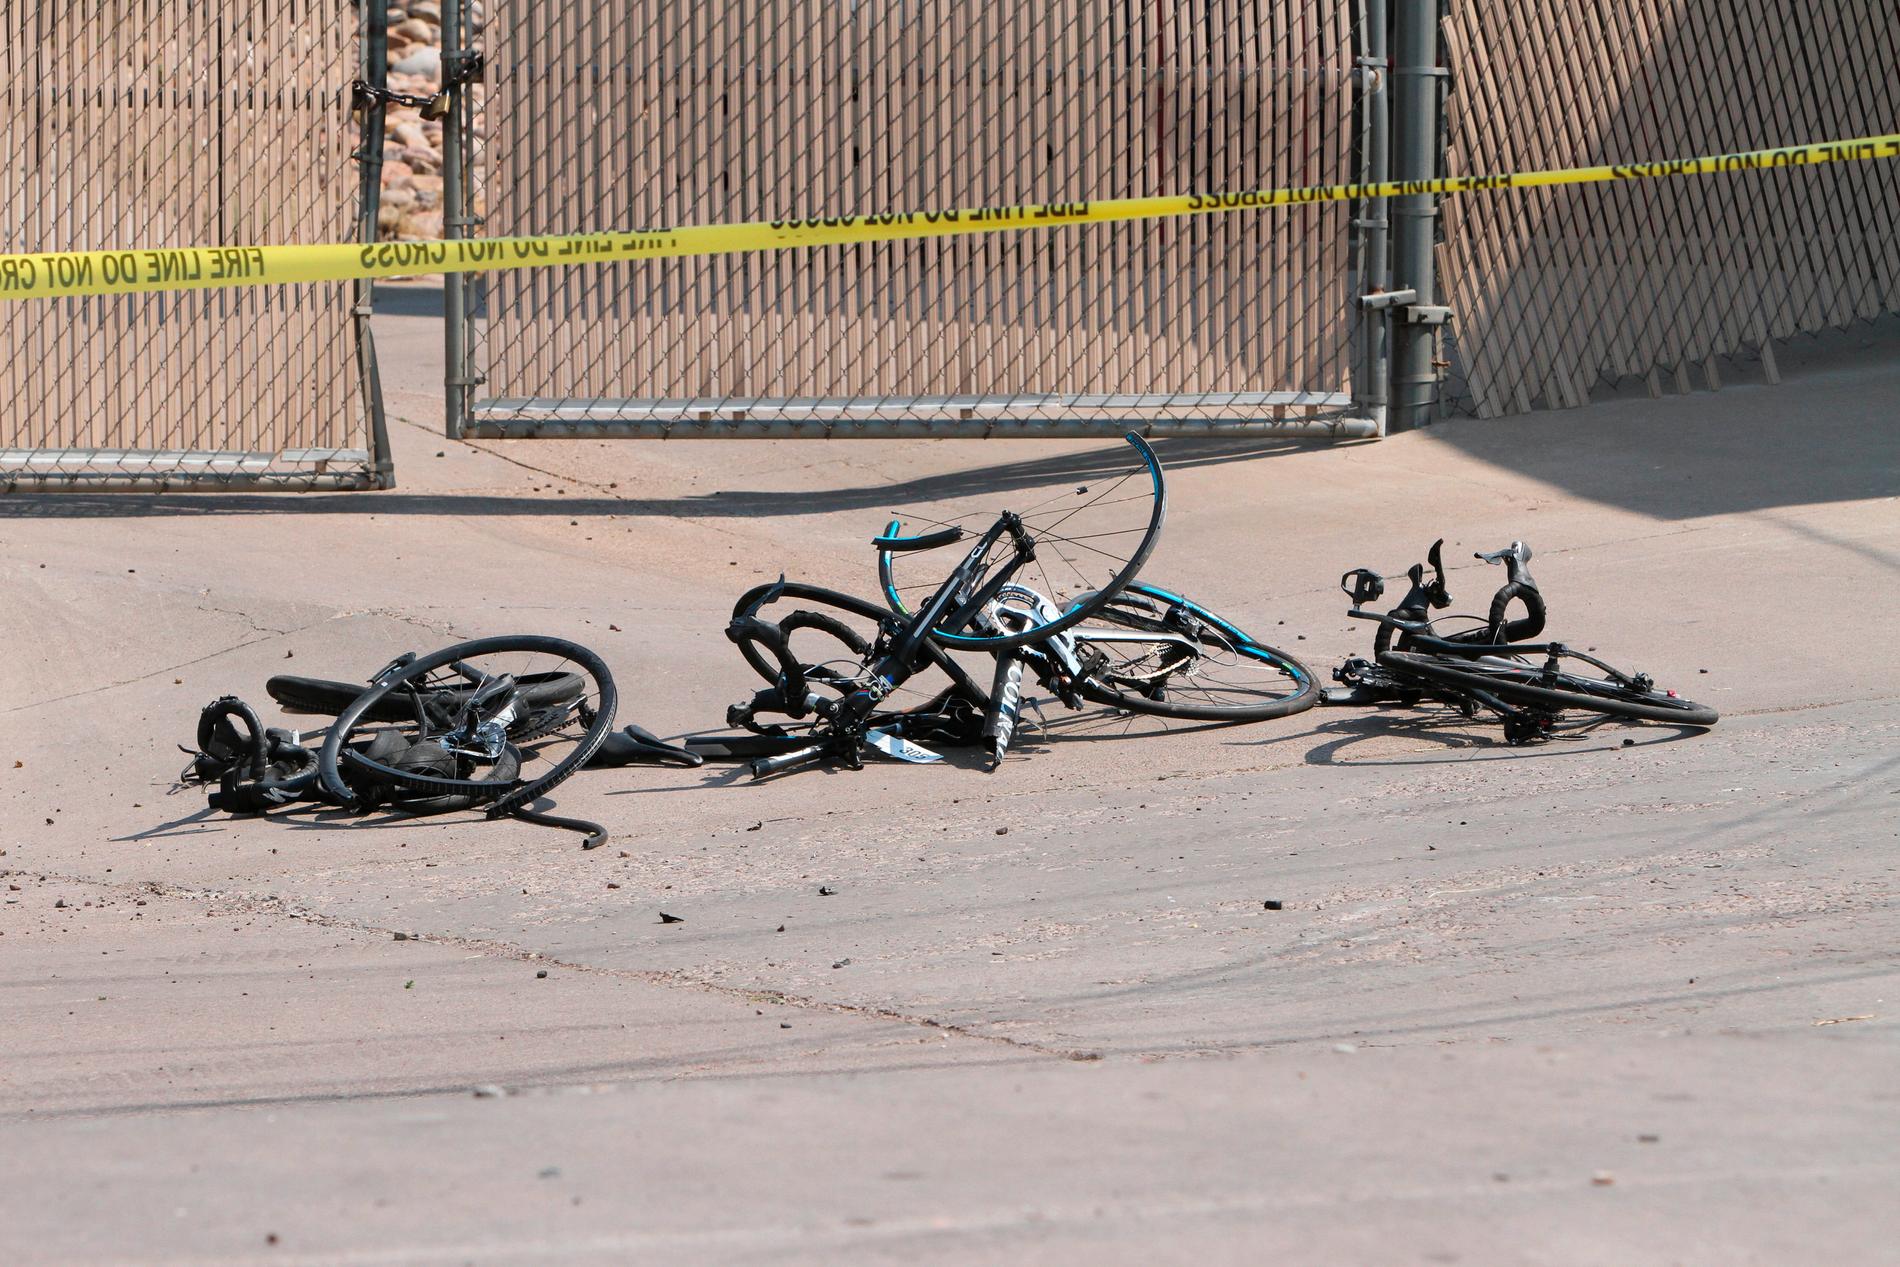 Förstörda cyklar i Show Low i Arizona, sedan en pickupförare kört på flera cyklister.